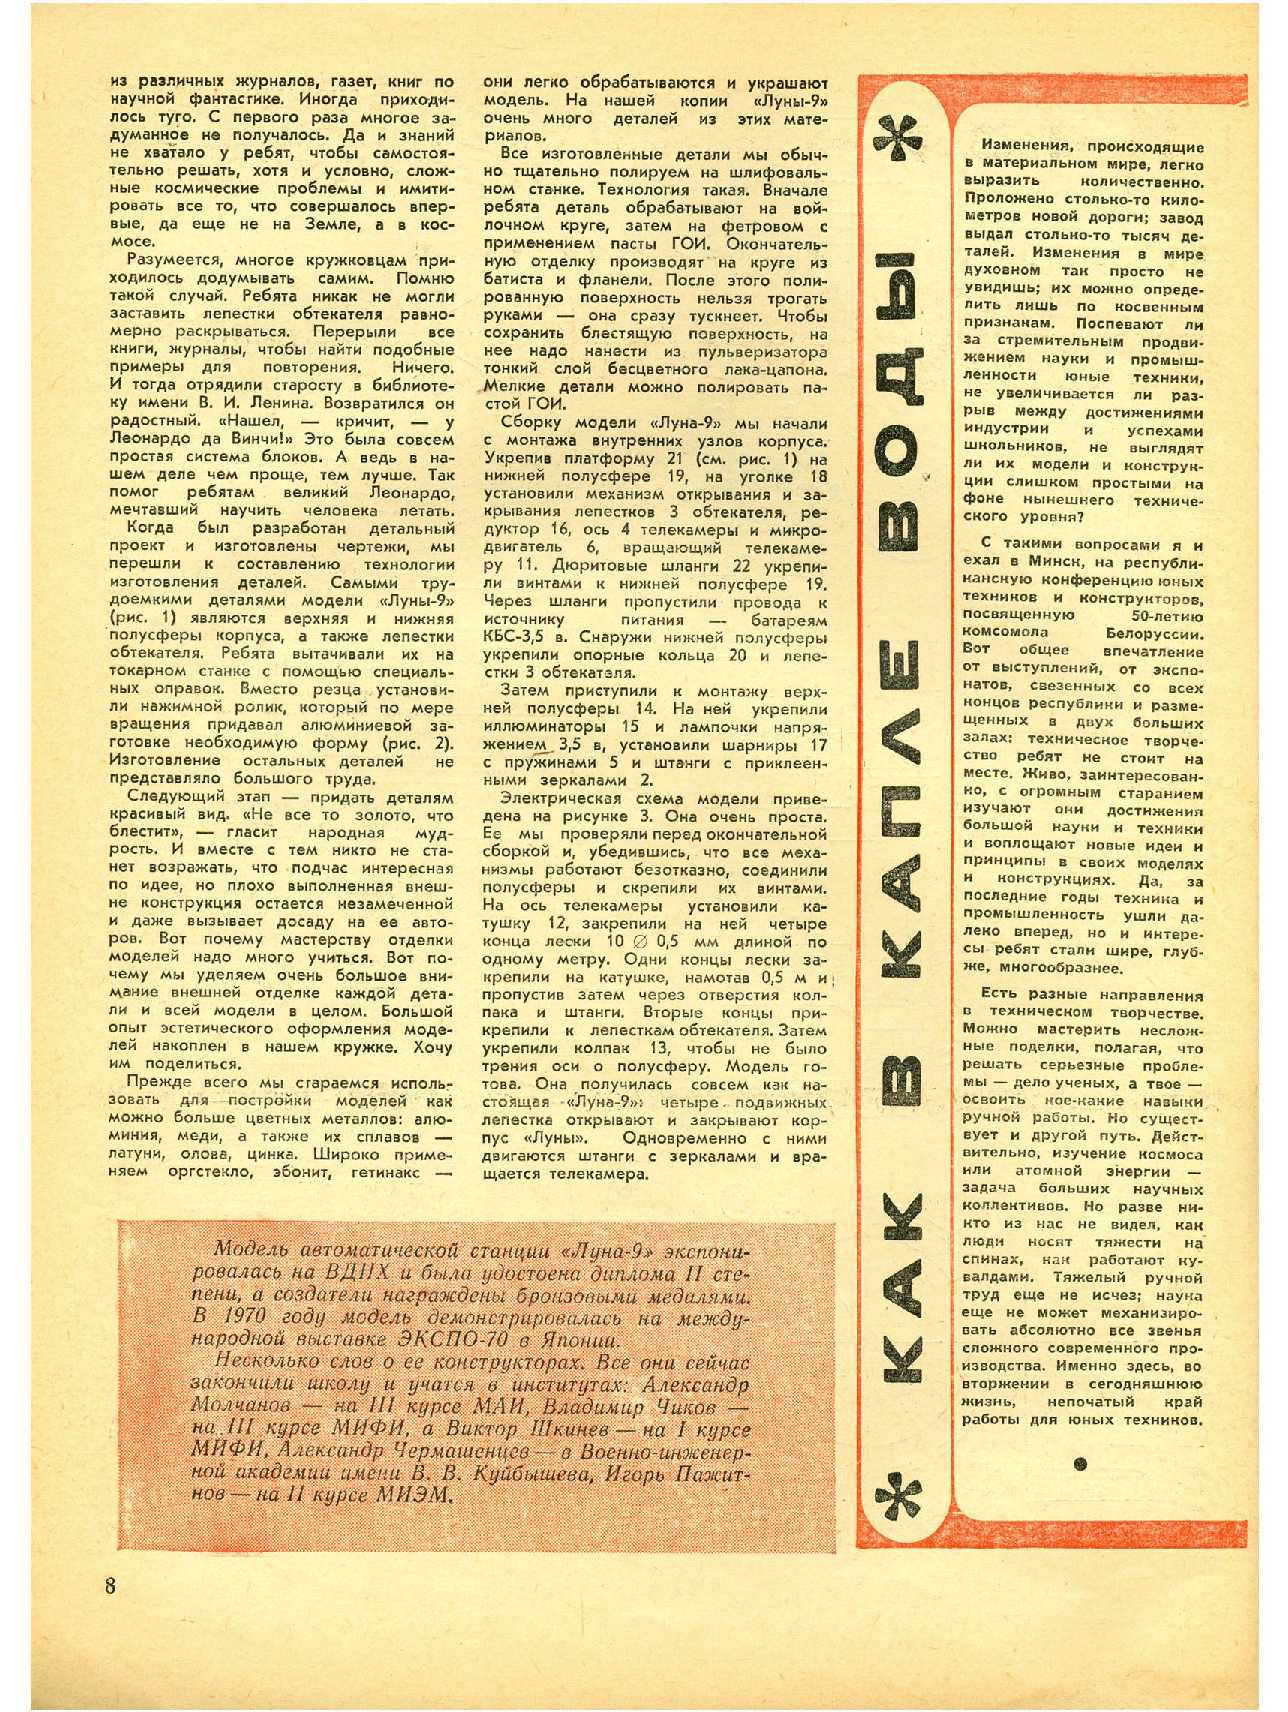 МК 1, 1971, 8 c.